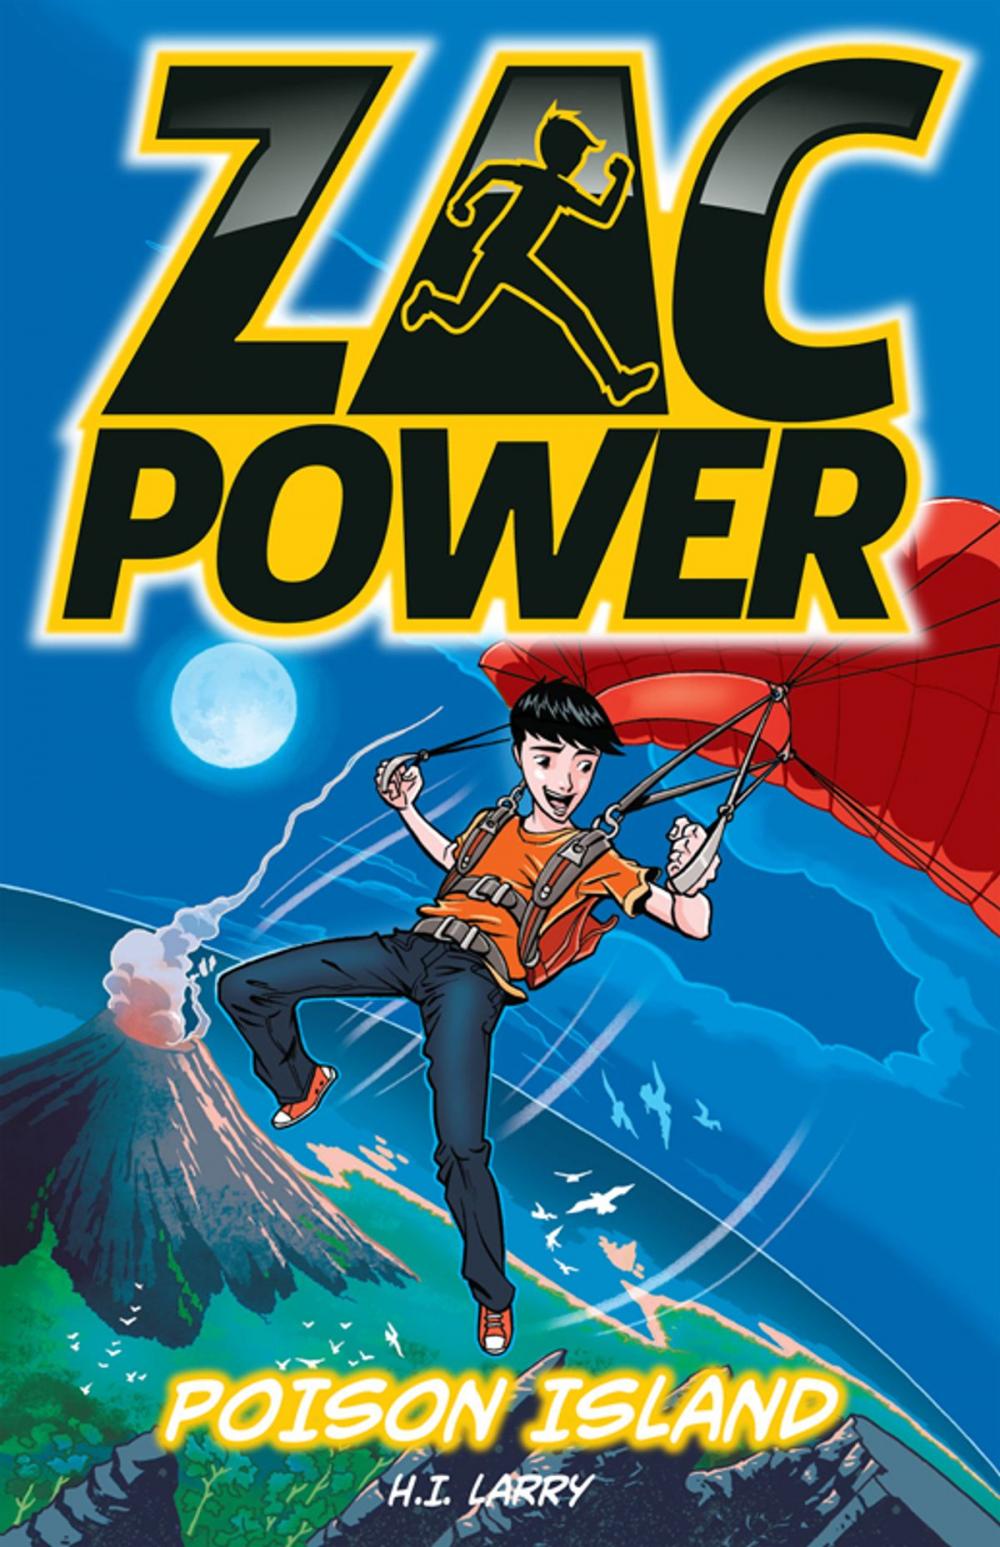 Big bigCover of Zac Power Poison Island